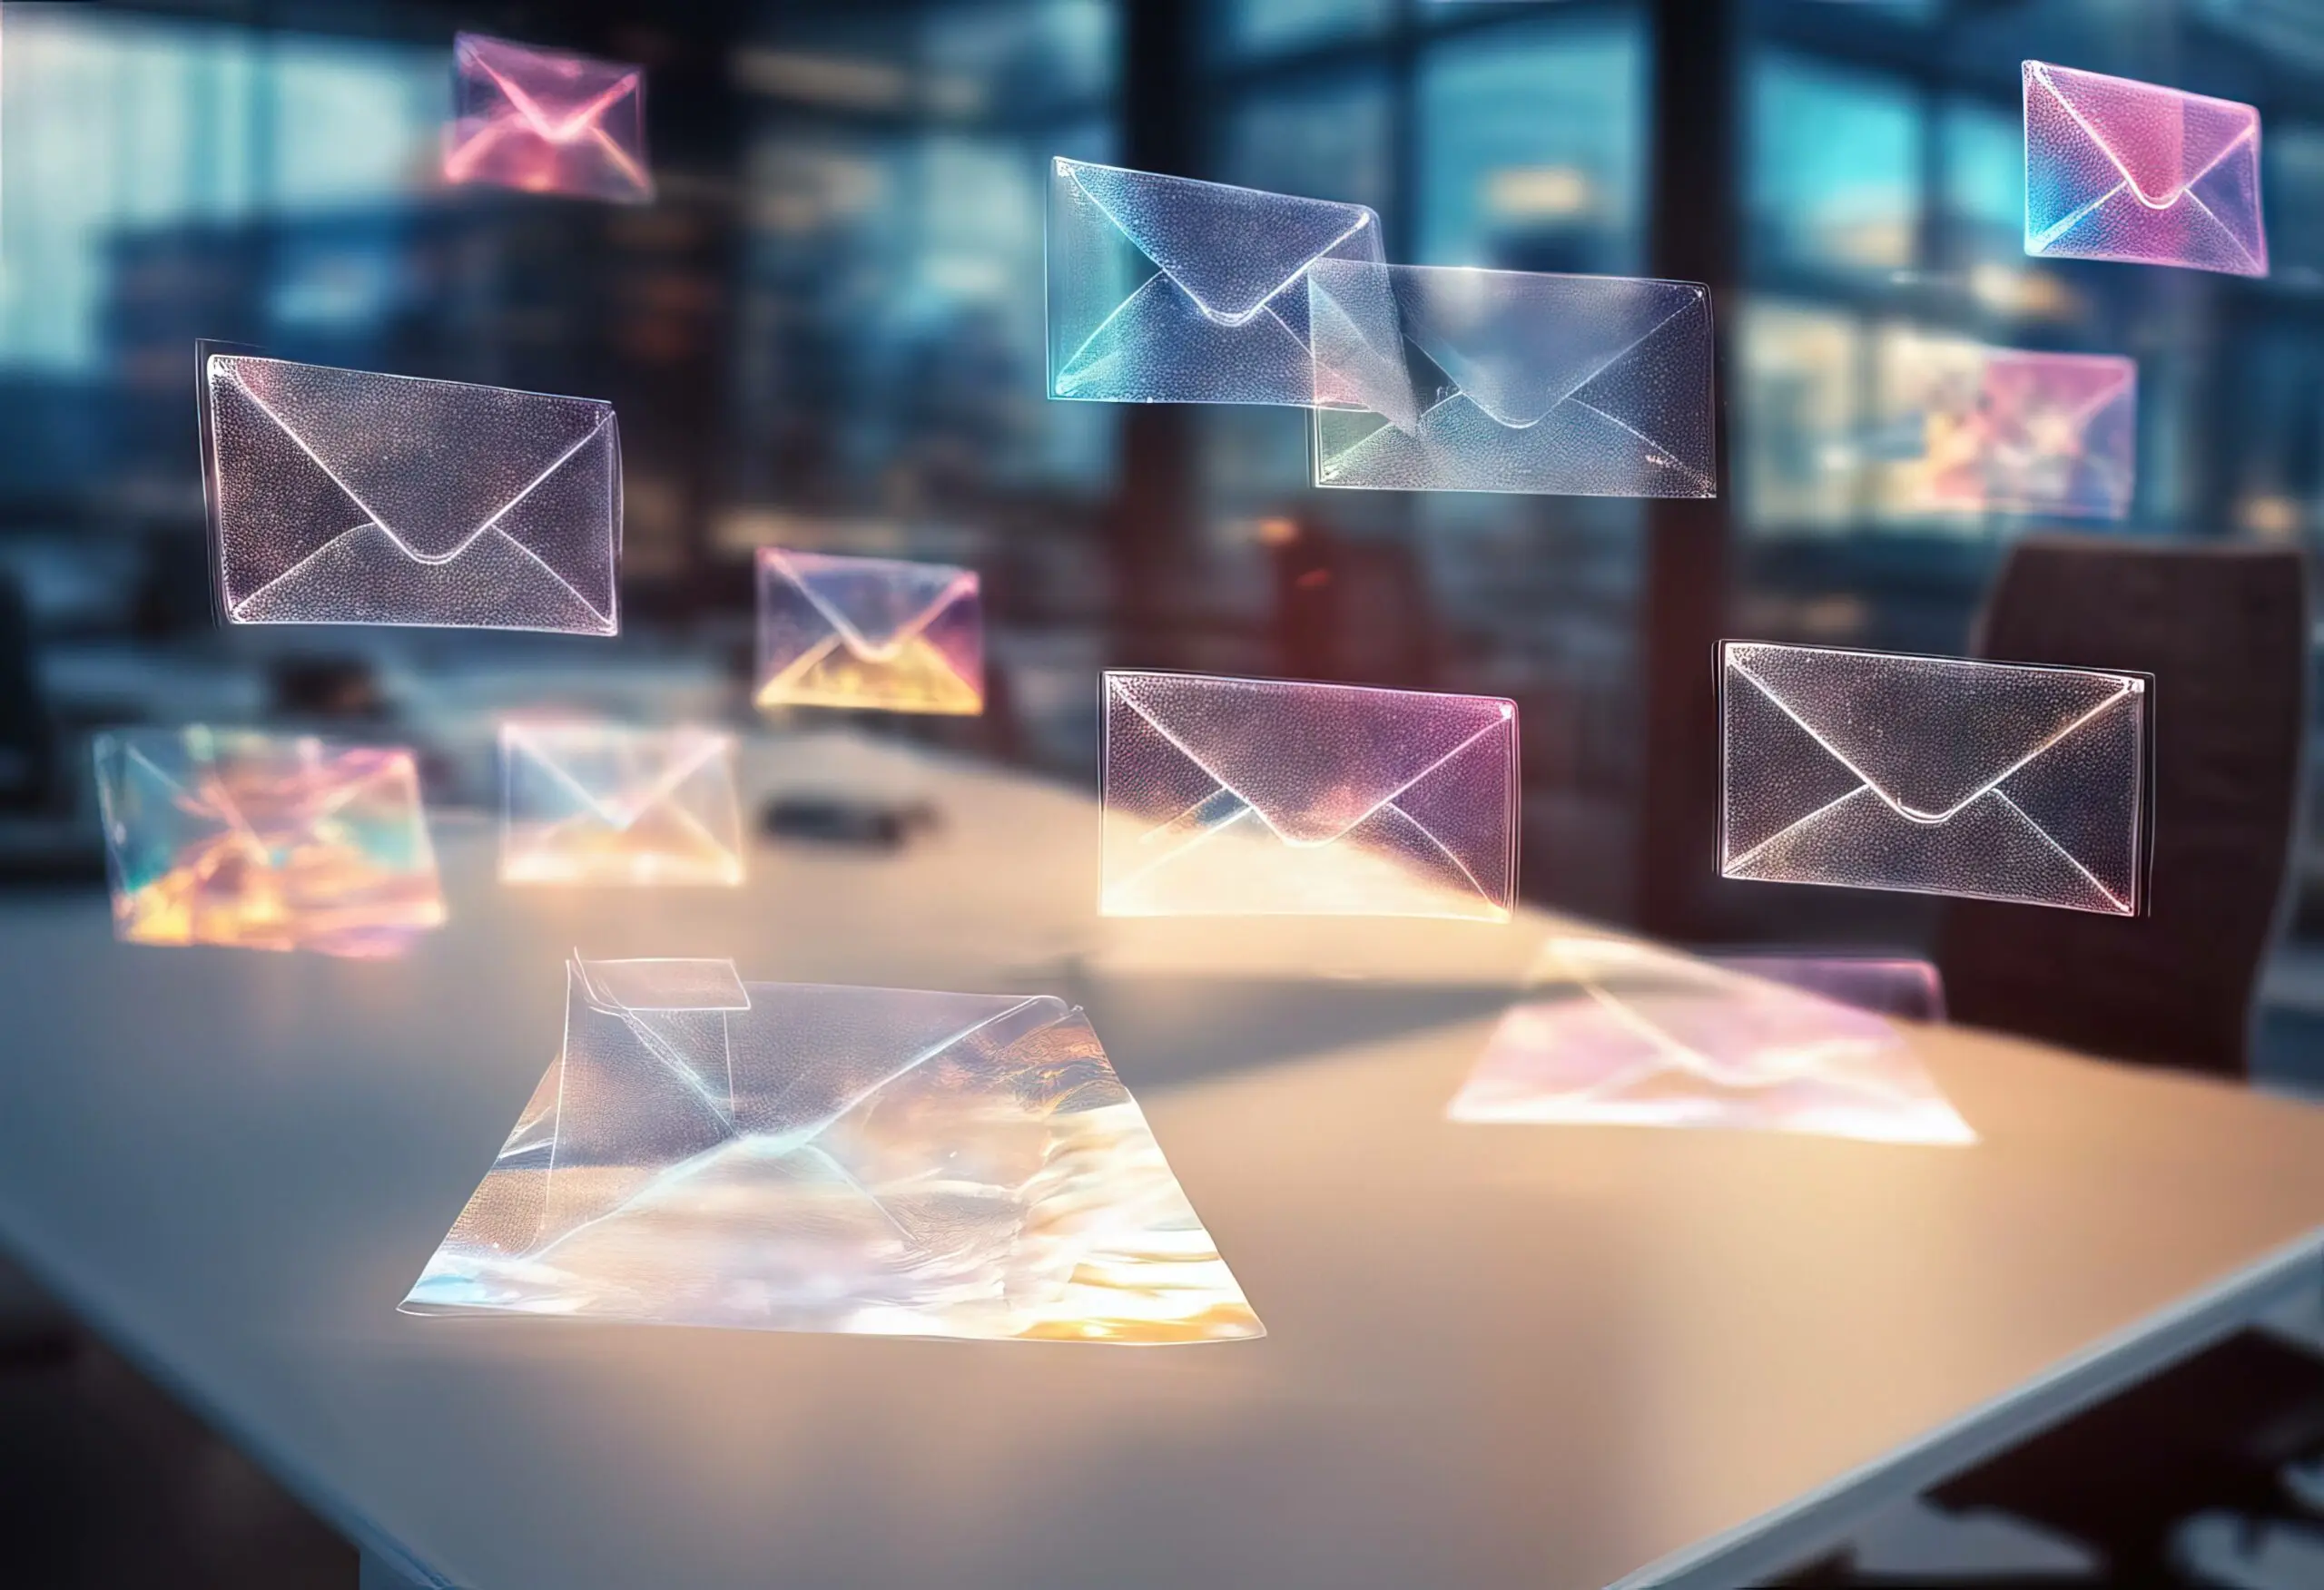 Virtual envelopes floating above a modern office desk.